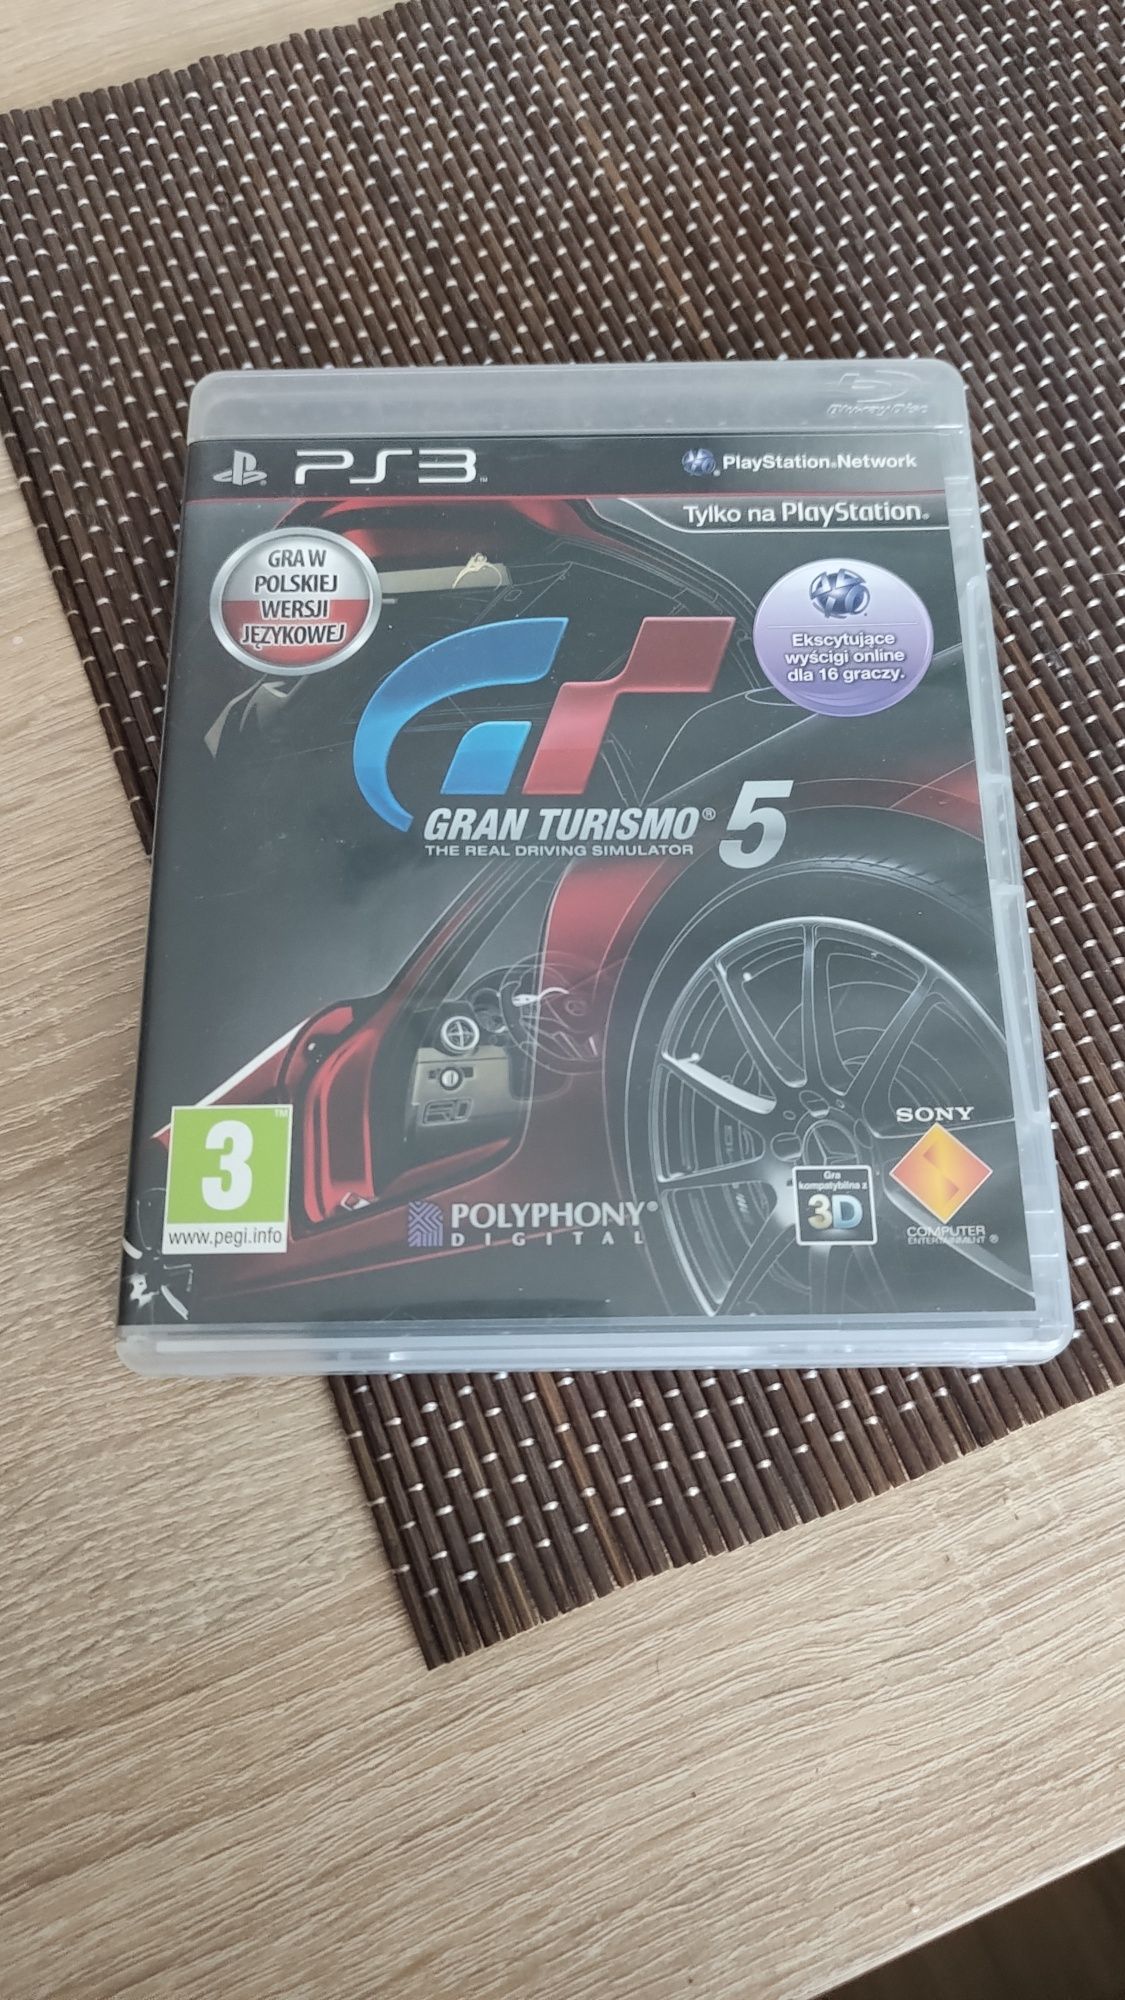 Gran Turismo 5 ps3